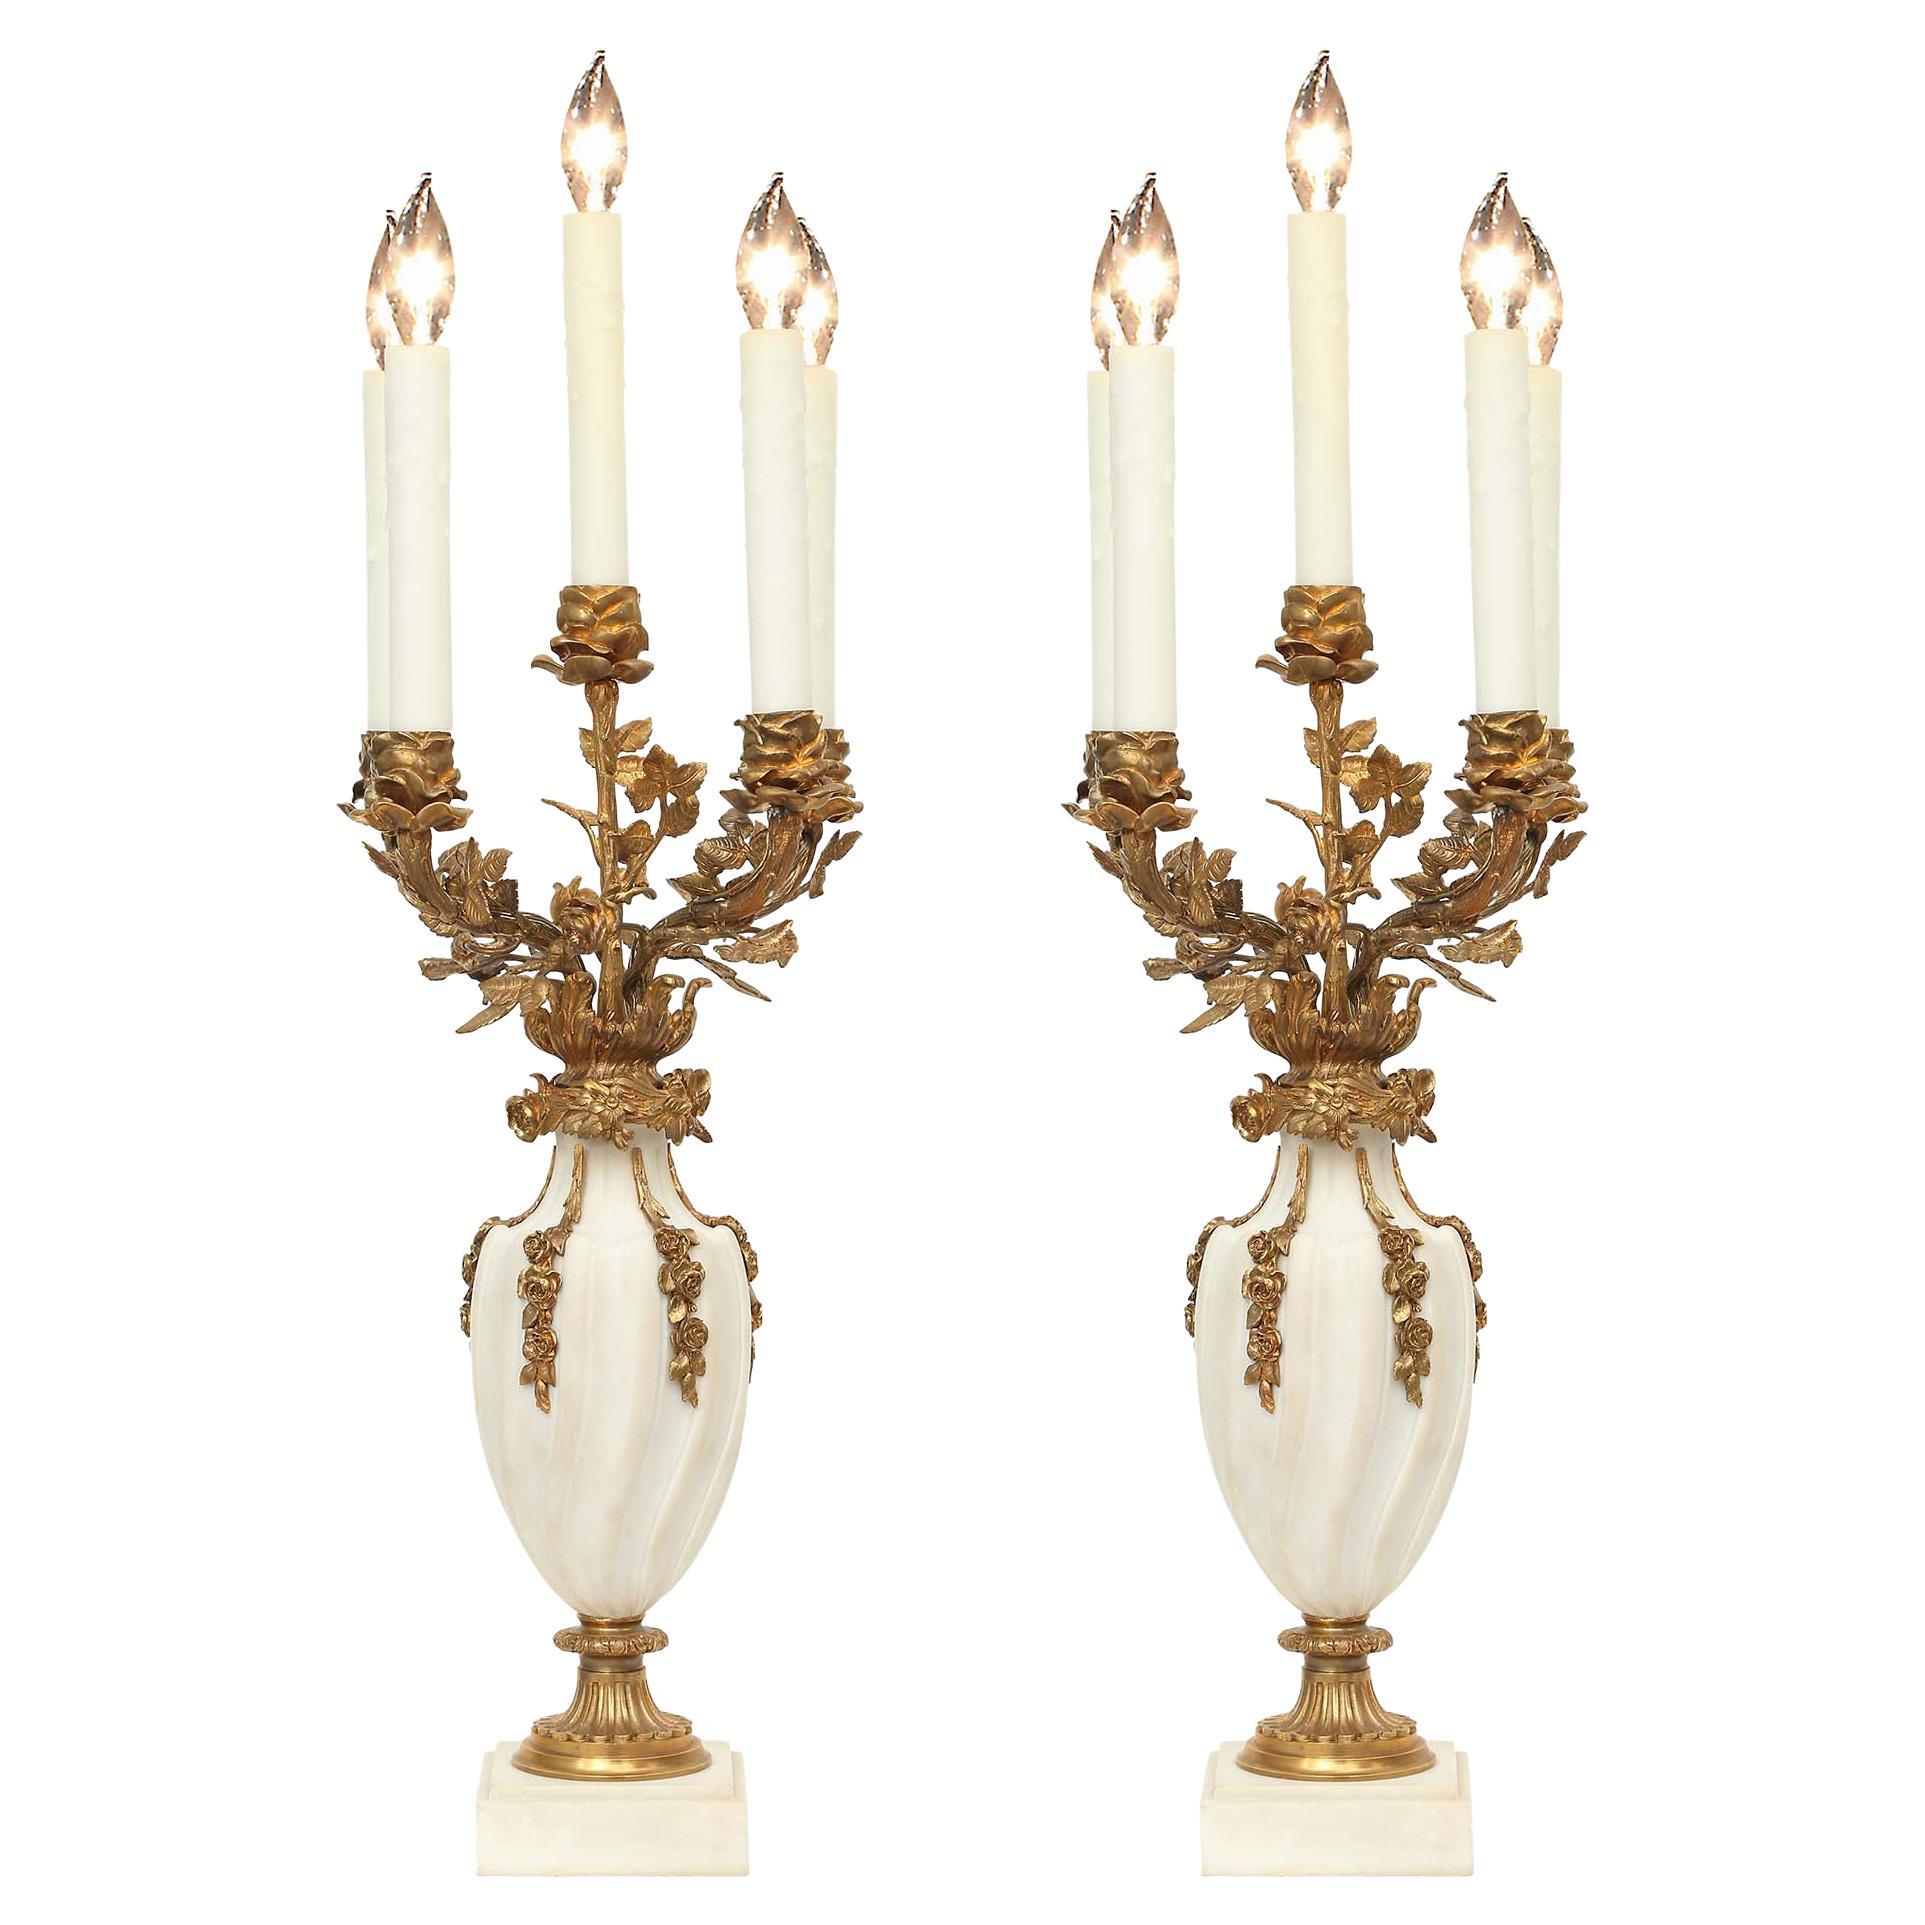 Paire de candélabres français de style Louis XVI montés sur des lampes